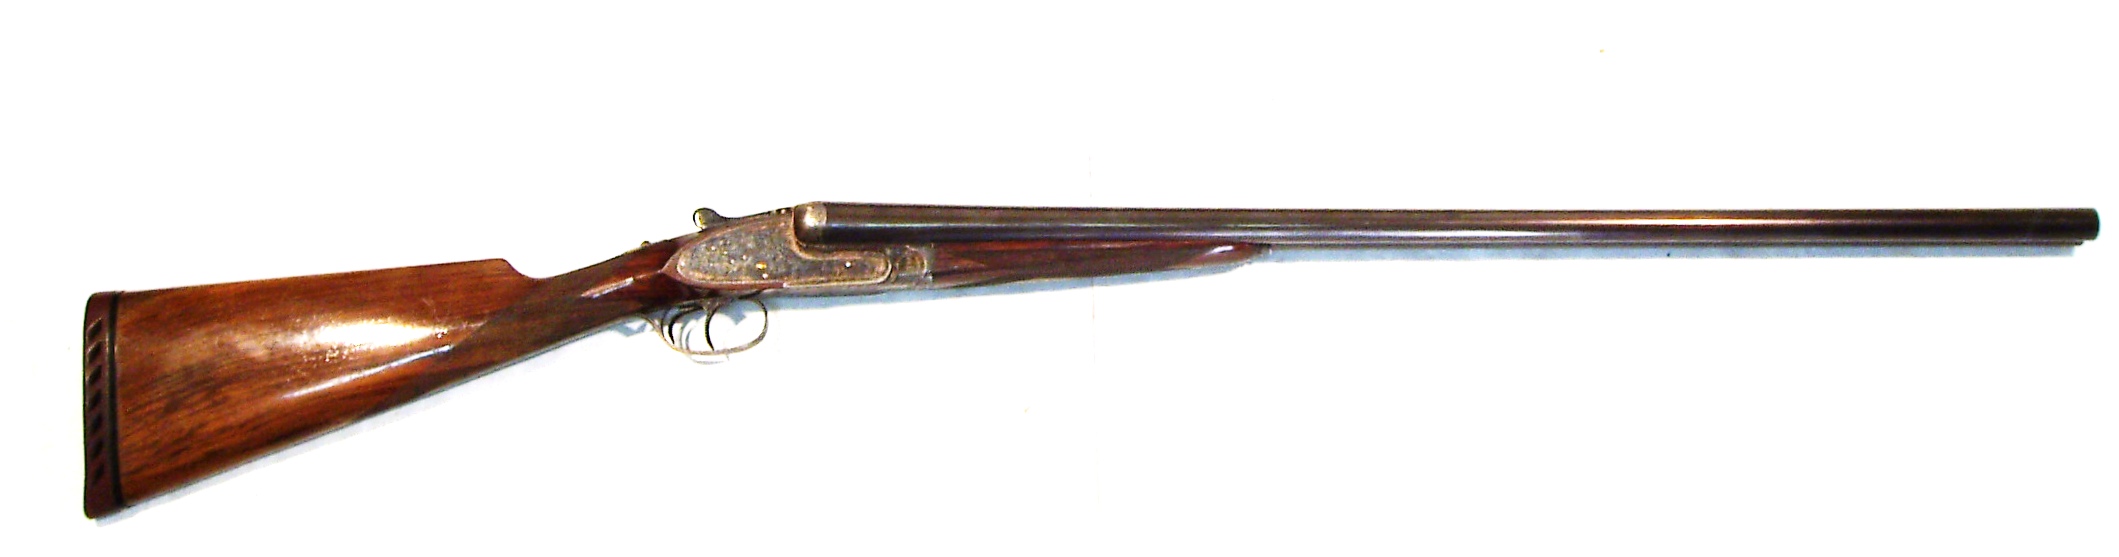 Escopeta L. "TXATXO" ARRIZABALAGA (JAM), modelo HEAVY SCROLL, dos juegos de cañones, calibre 12, nº 1333-0